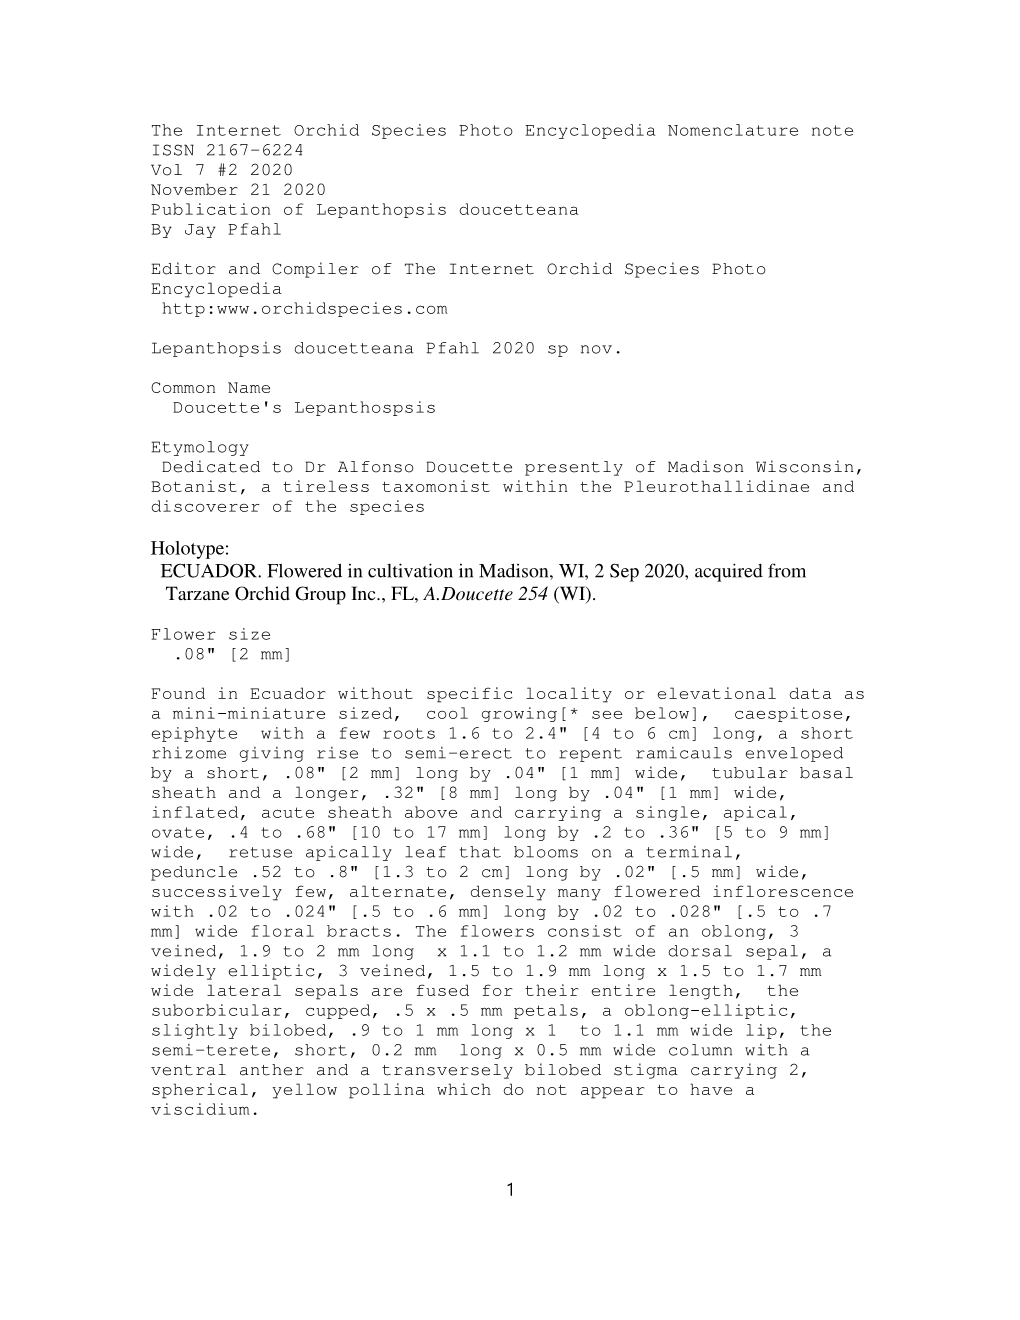 PDF File of Lepanthopsis Doucetteana Pfahl, Sp.Nov. 2020